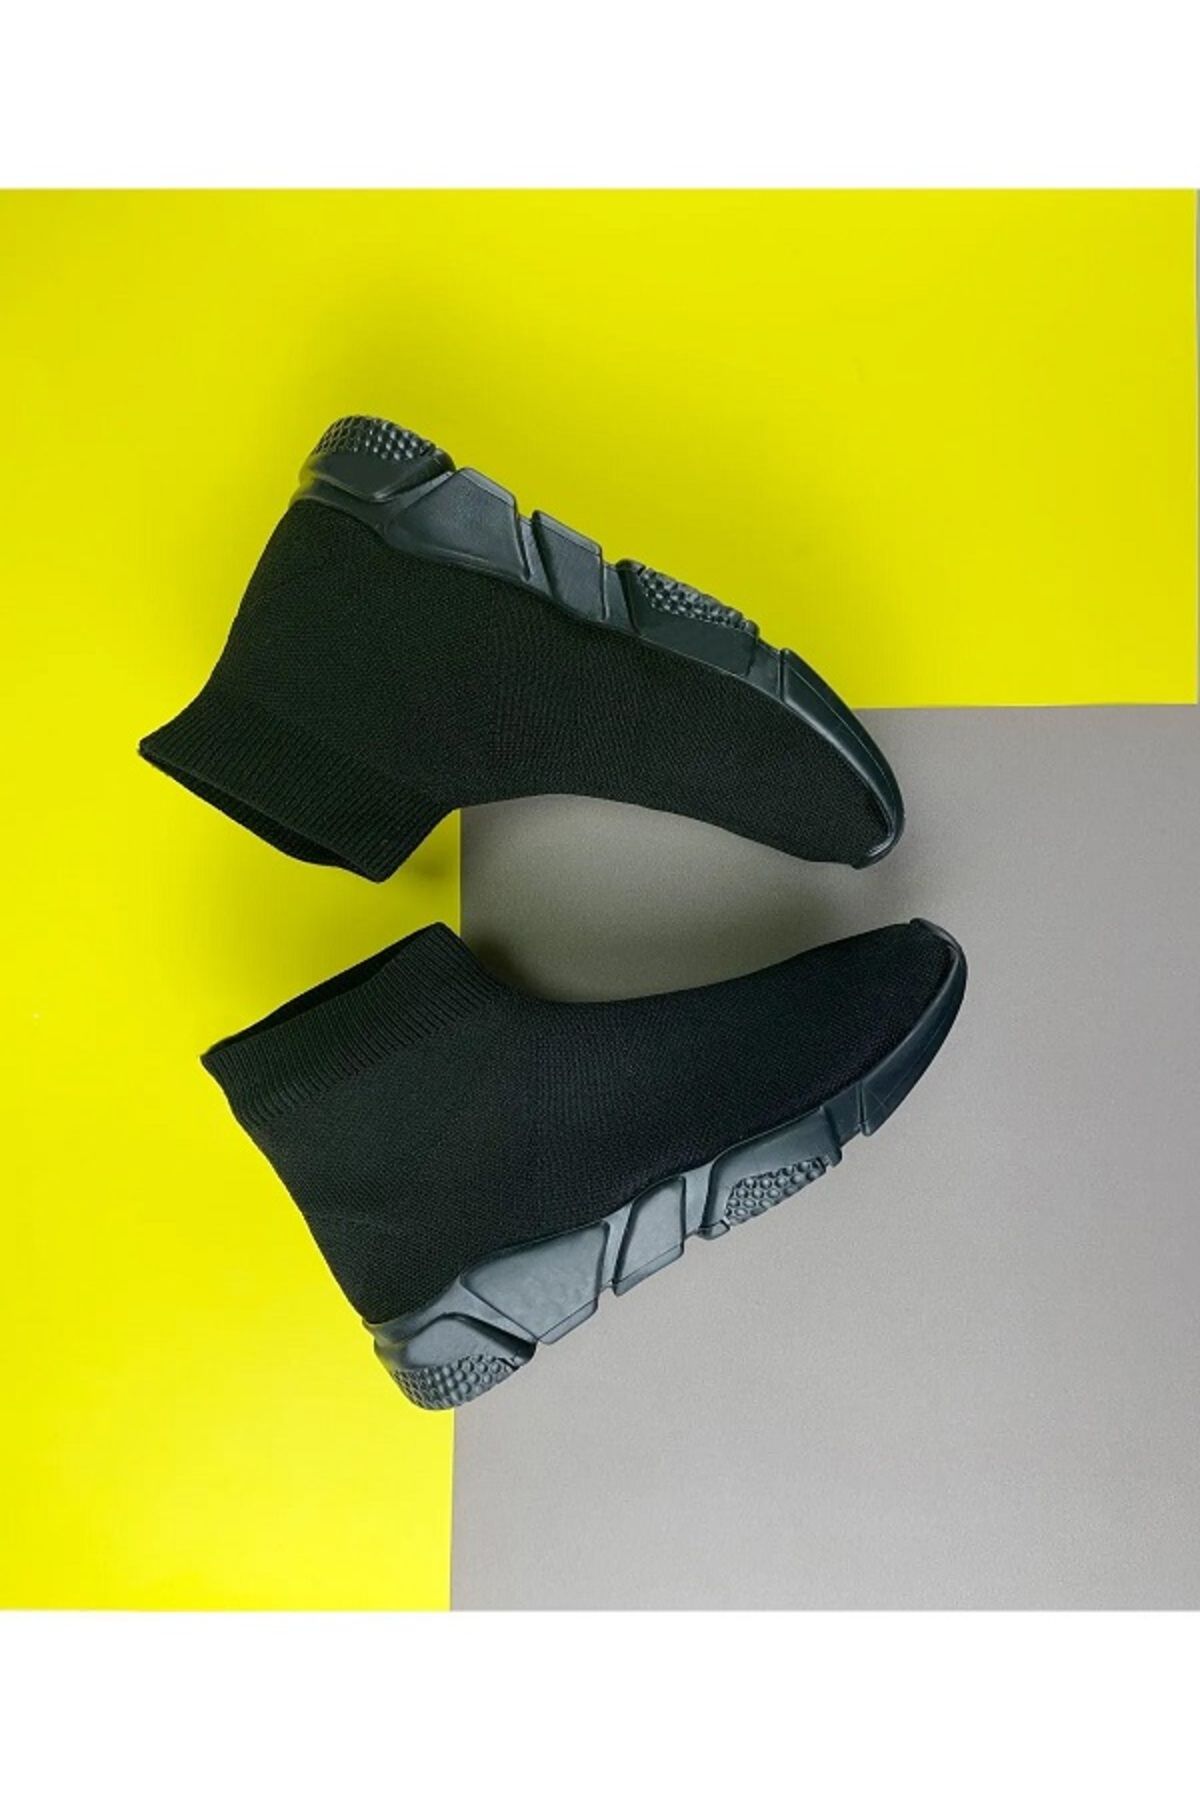 Pruva moda Siyah Bağcıksız Streç Bez Çorap Ayakkabı Sneaker Kadın Ve Erkek - Geniş Kalıp